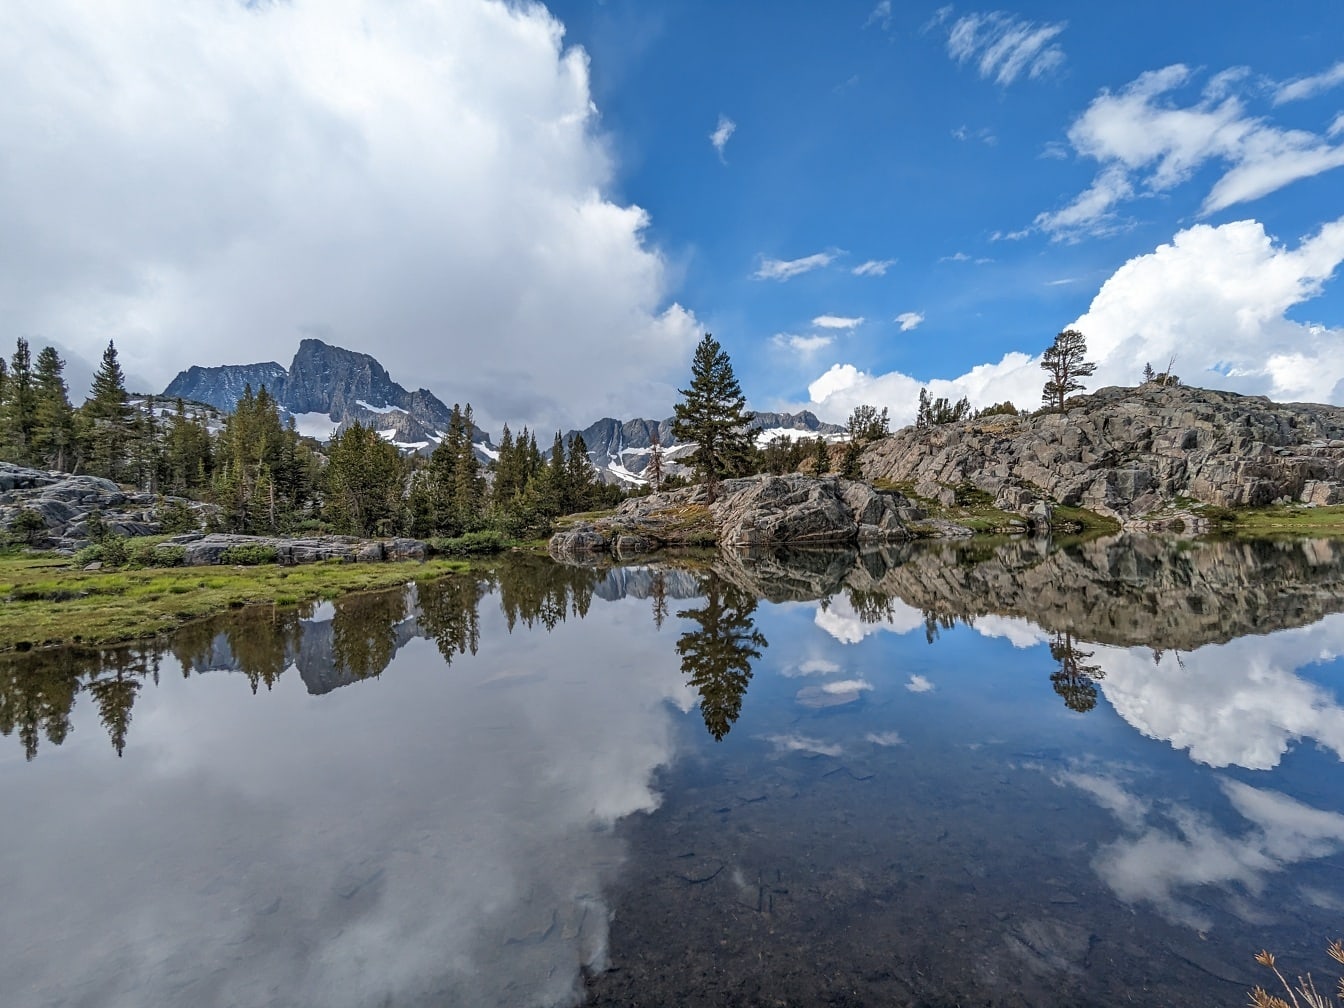 Величественная панорама берега озера с отражением облачно-голубого неба